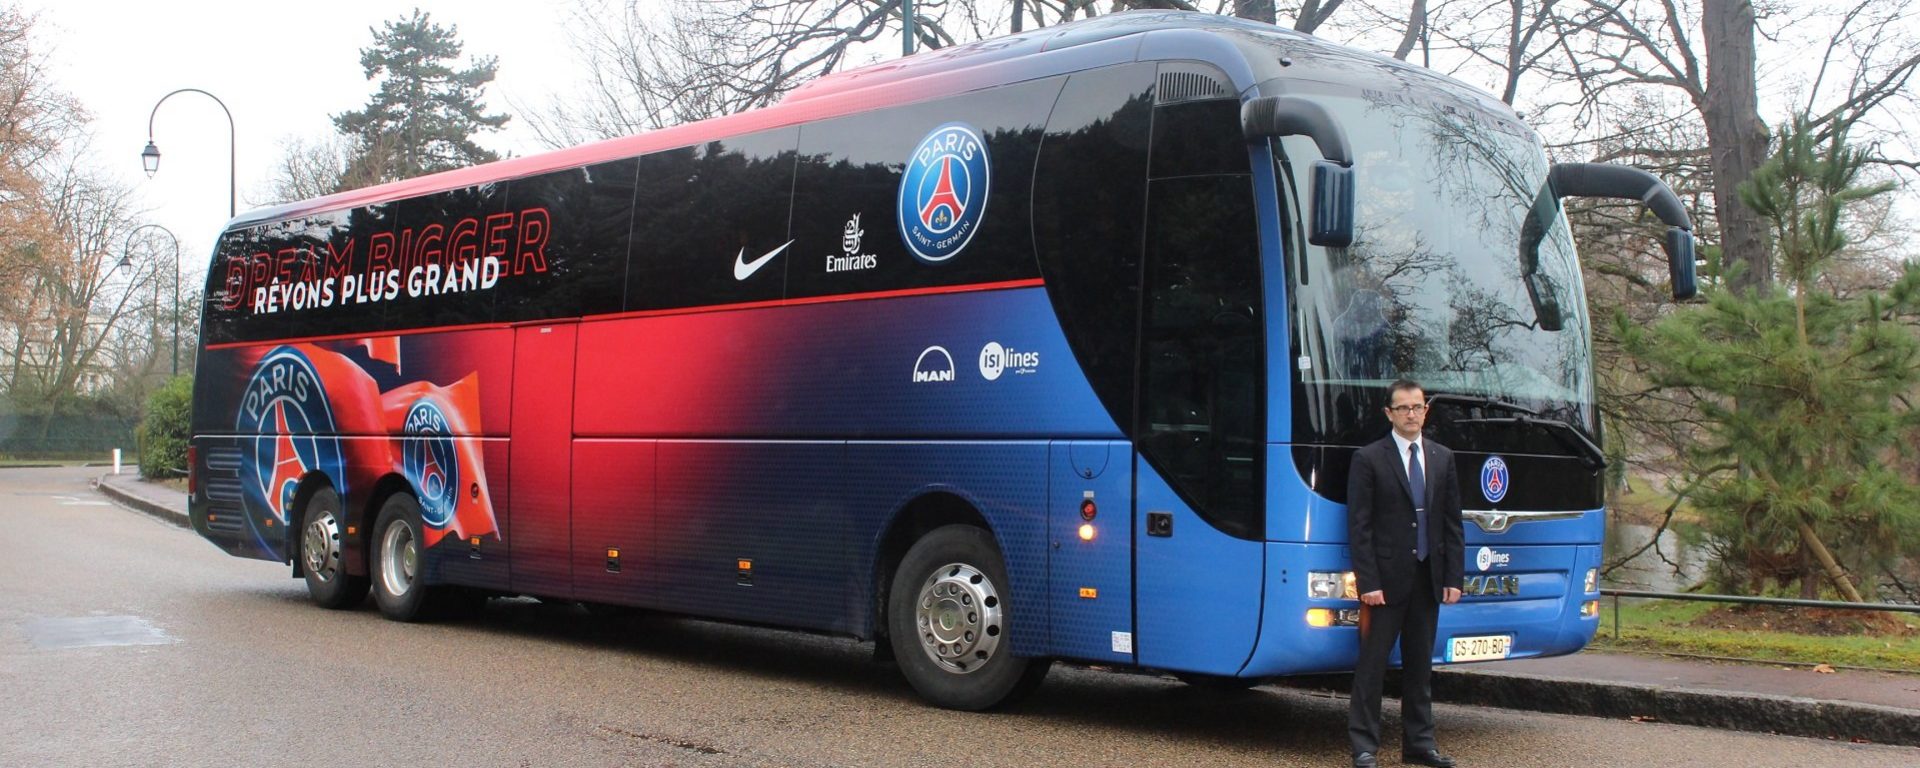 Transdev isilines autocar équipe supporters PSG transporteur officiel évenementiel